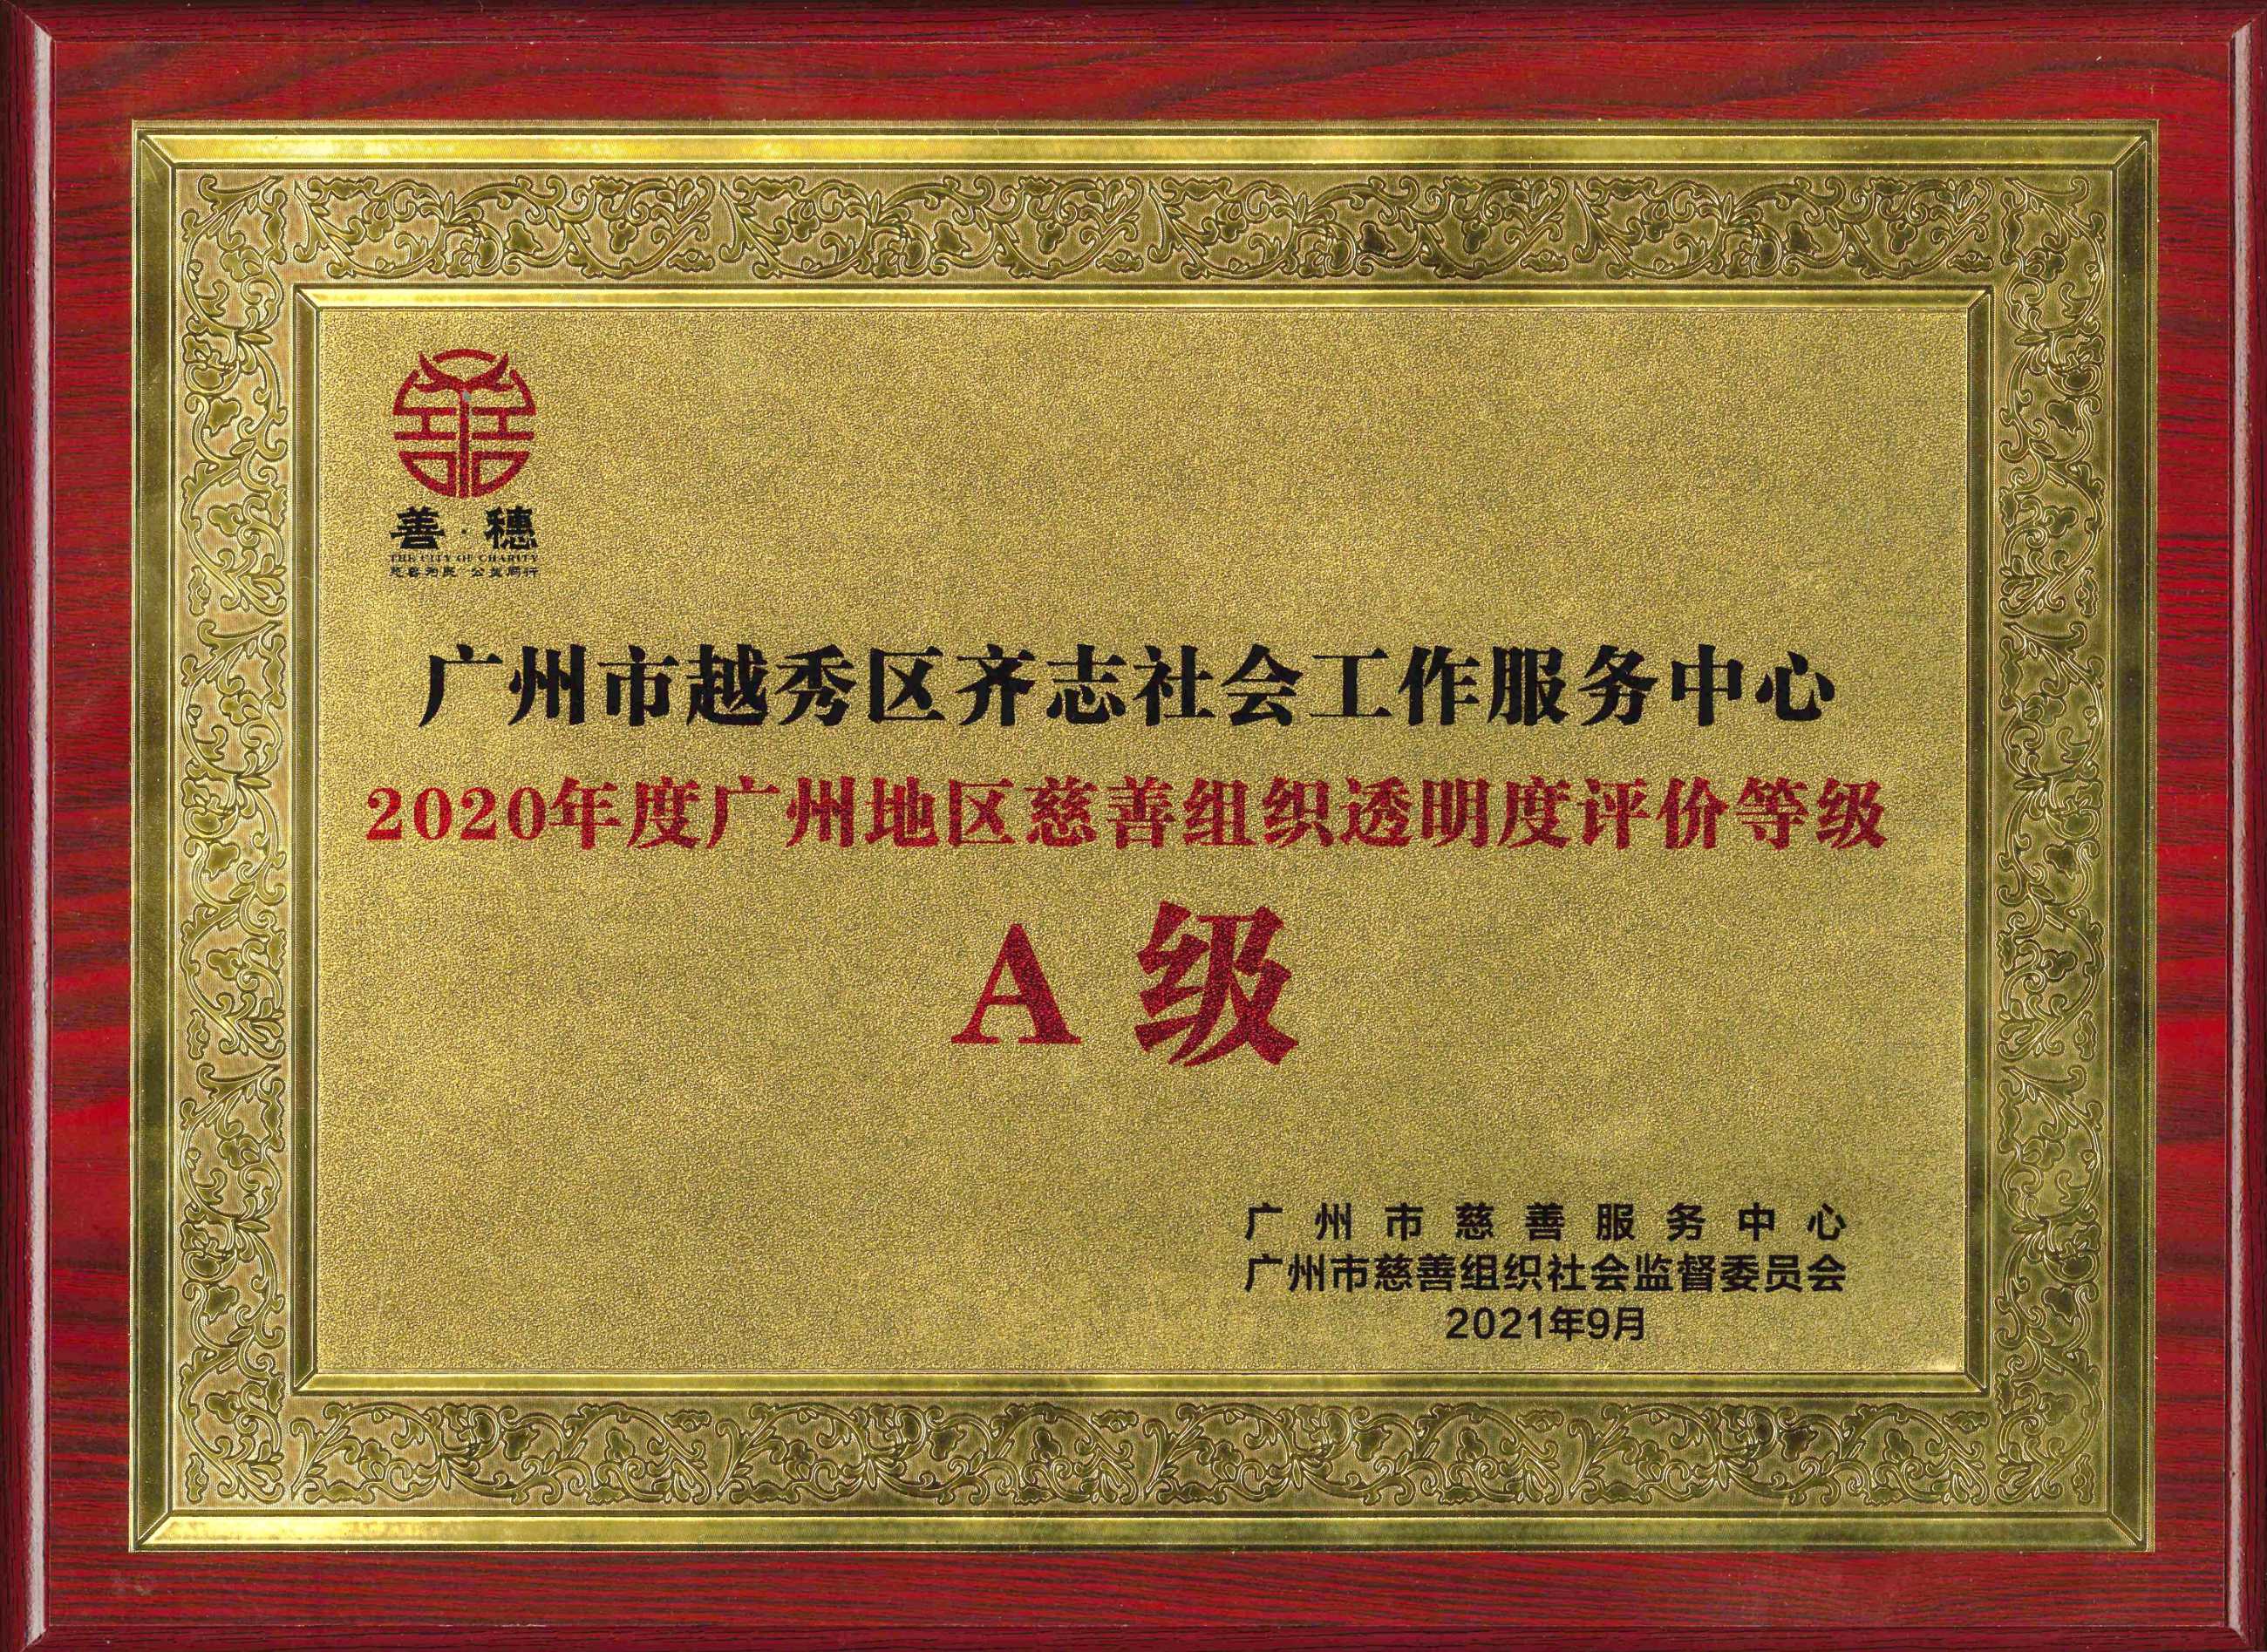 2020年度广州地区慈善组织透明度评价等级A级.jpg